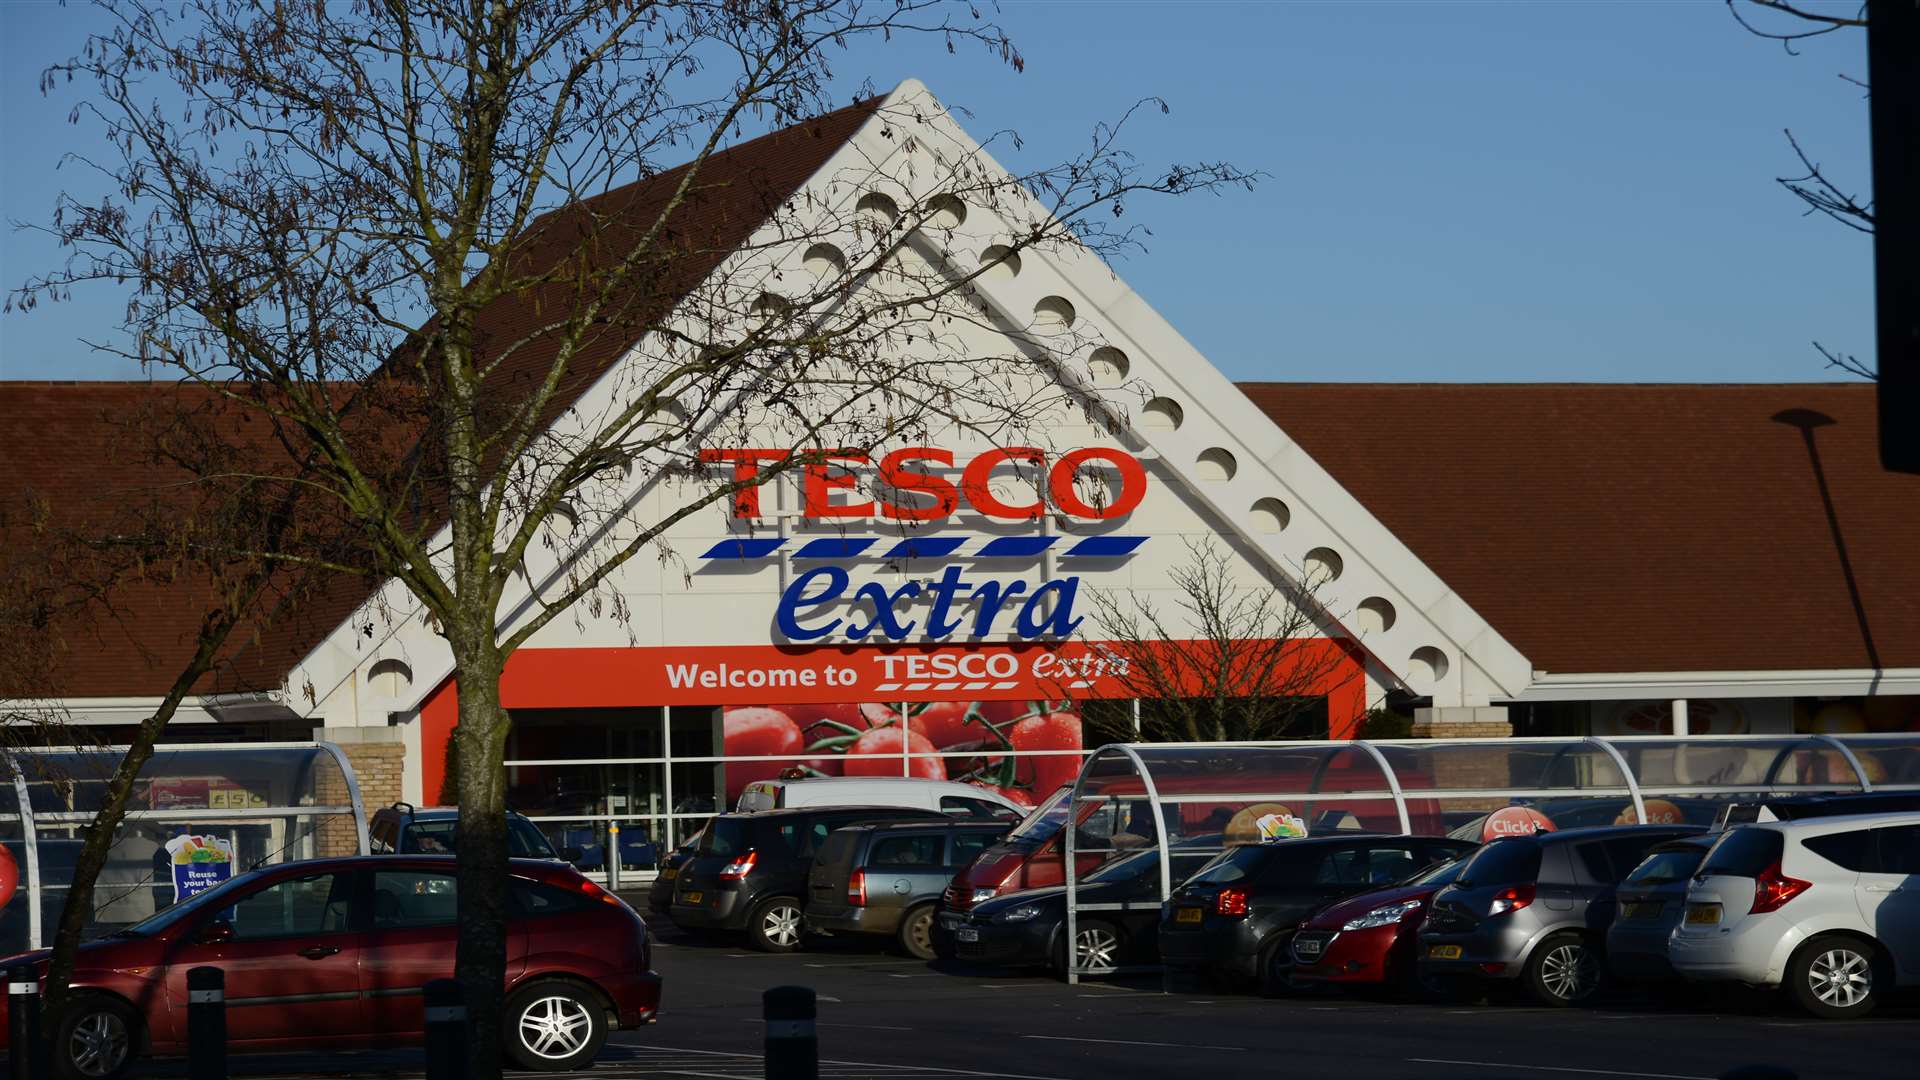 The Tesco store in Park Farm, Ashford